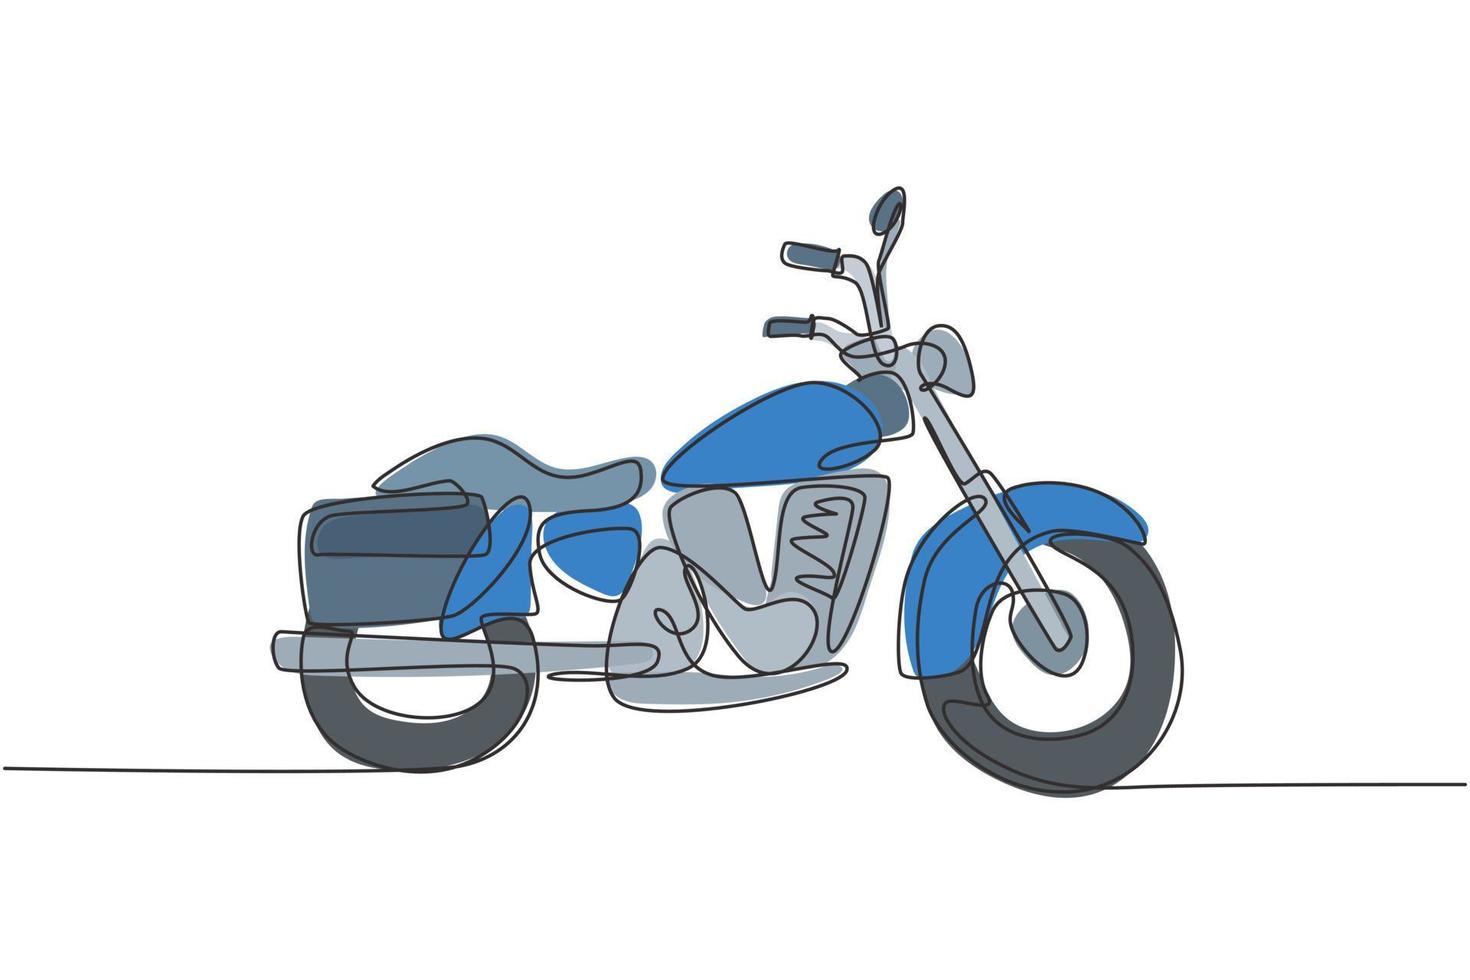 único desenho de linha contínua do antigo símbolo clássico da motocicleta vintage. conceito de transporte de motocicleta retrô uma linha desenhar design ilustração gráfica de vetor